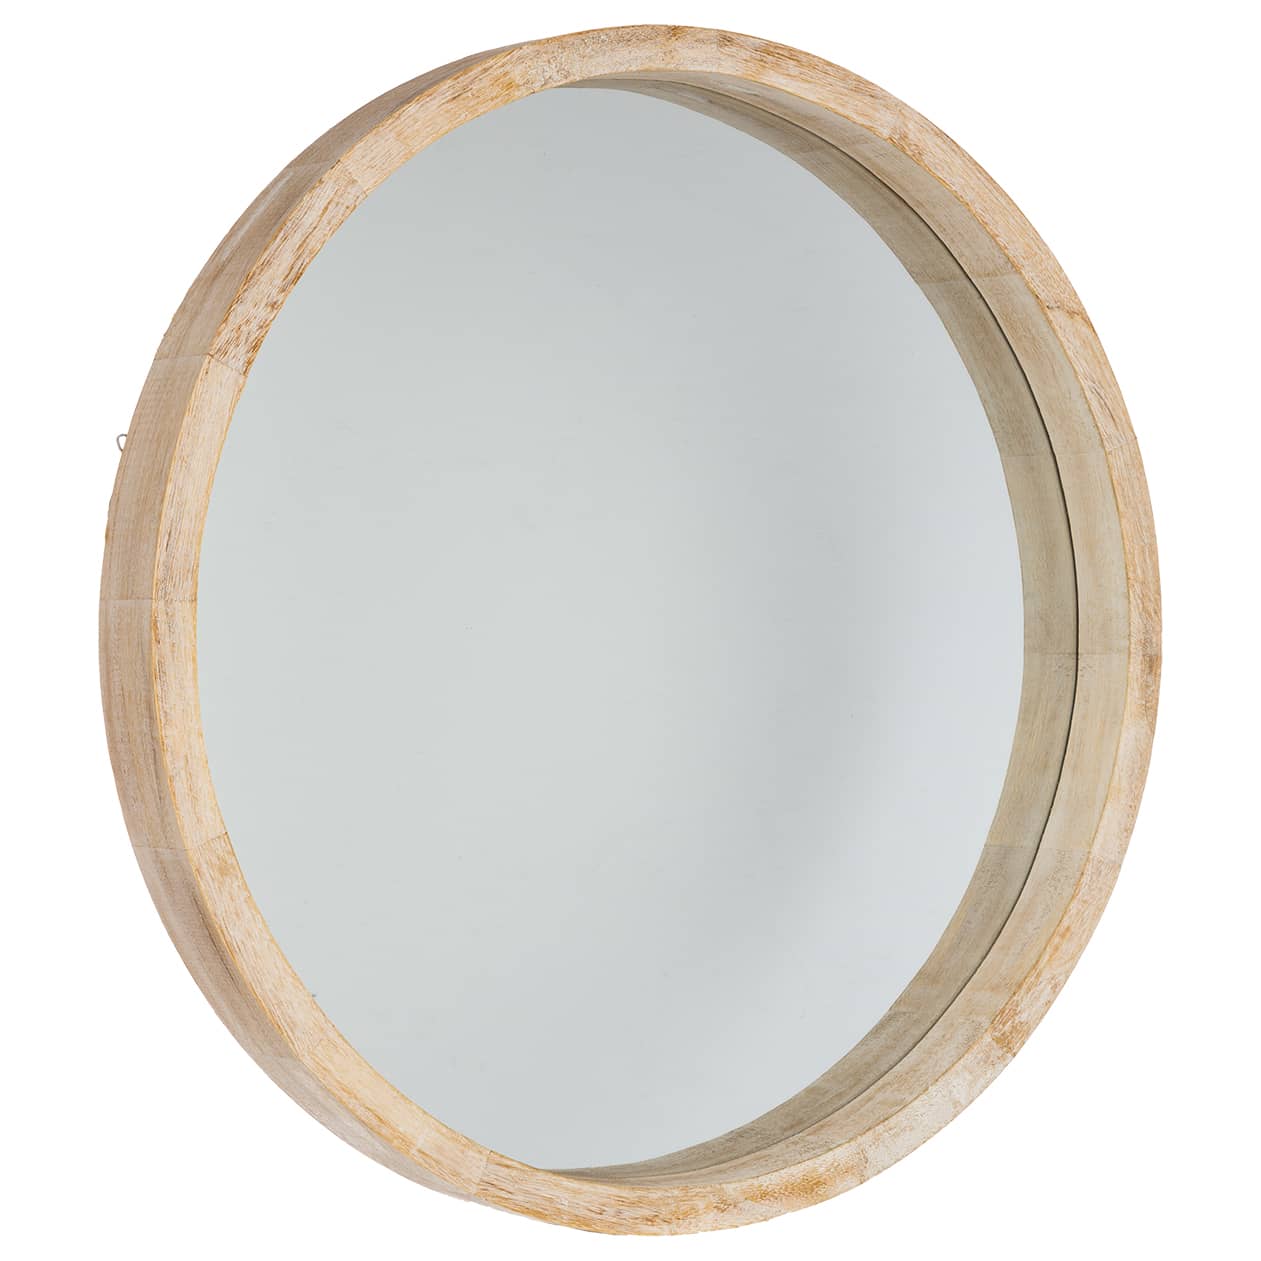 4goodz Ronde spiegel van Hout 52 cm doorsnede - 5 cm diep